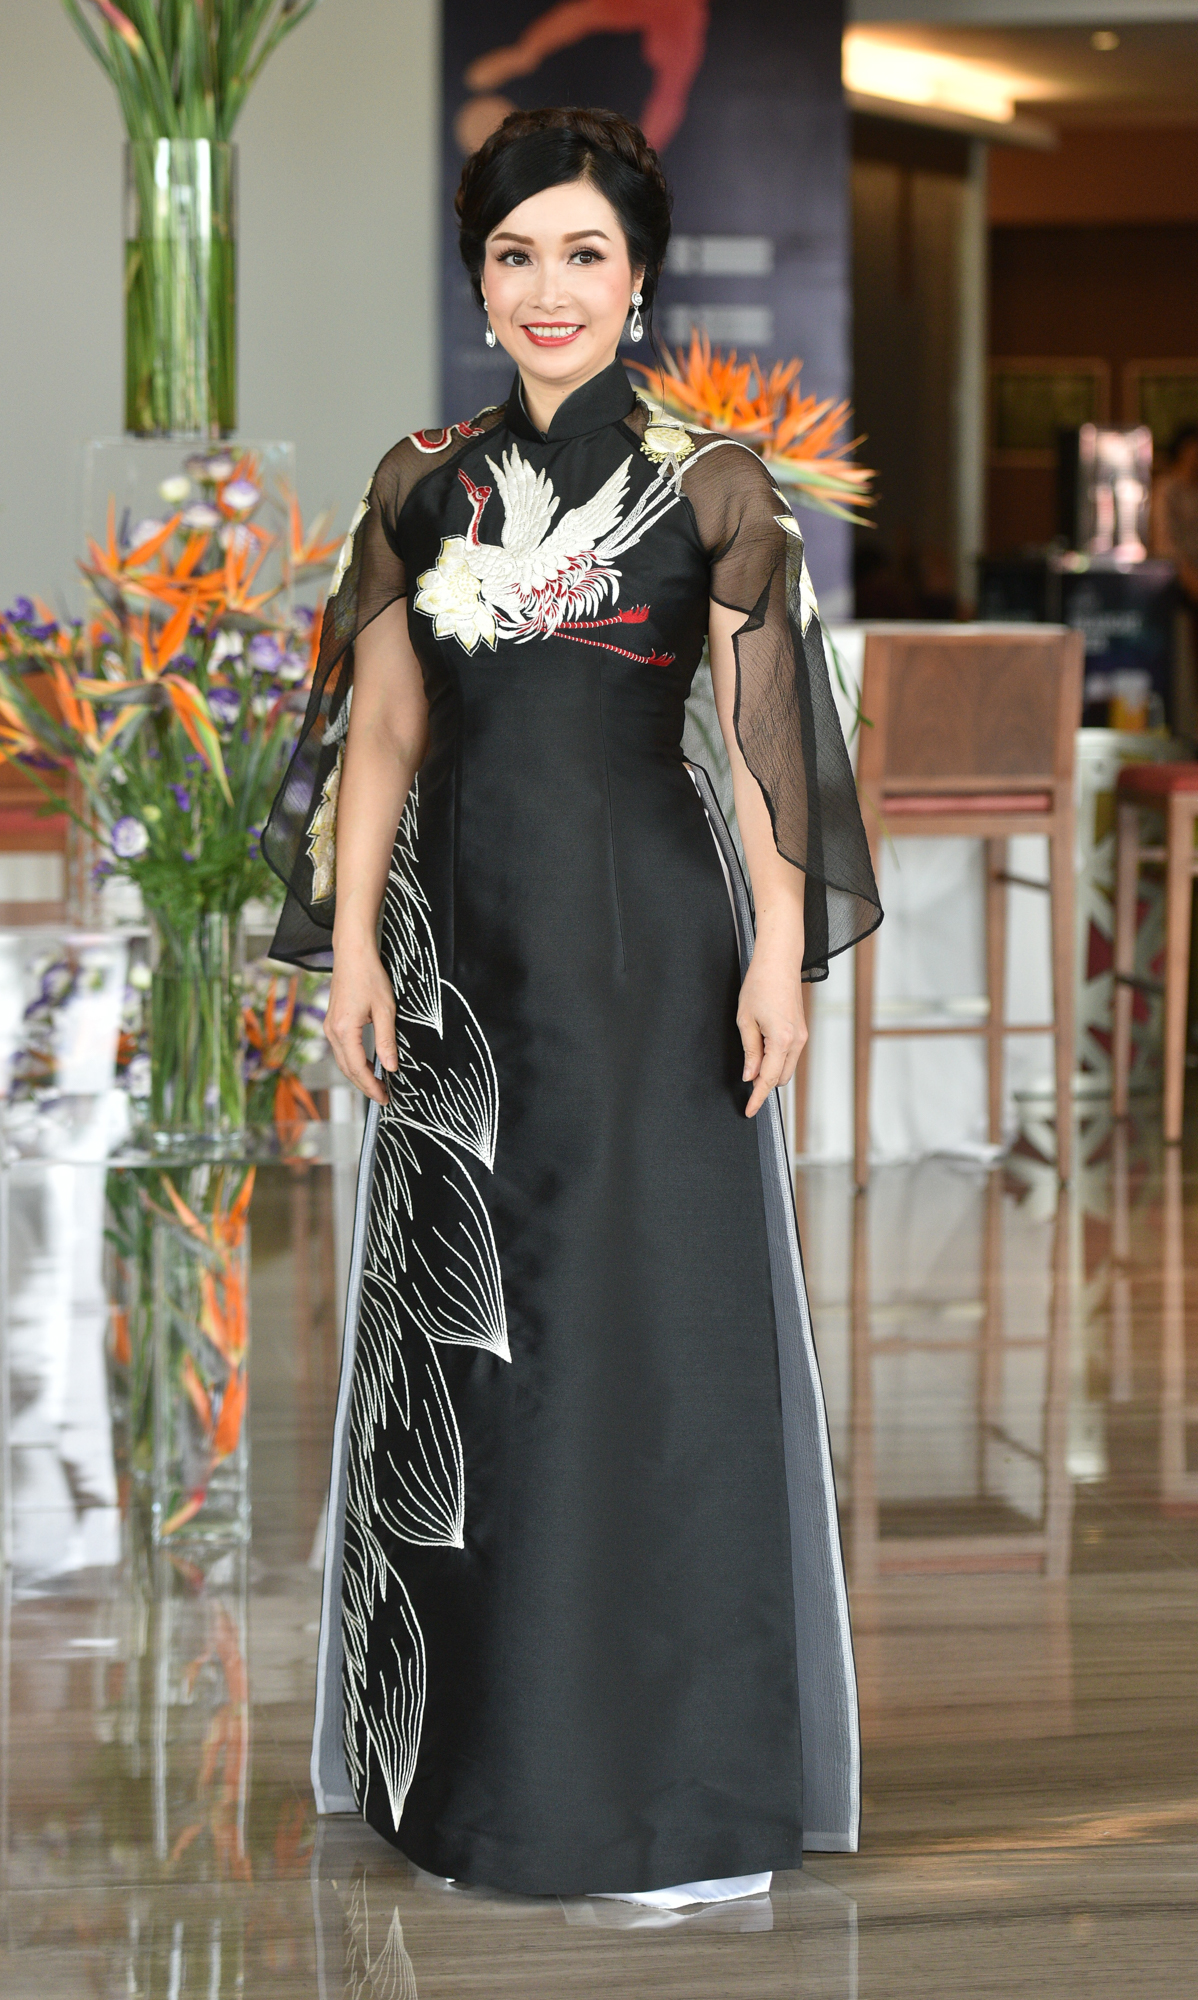 Hoa hậu Việt Nam 1988 xuất hiện trong một sự kiện với áo dài thanh lịch. Hiện, trực tiếp điều phối hoạt động của Quỹ Giáo dục Đại học và sau Đại học của Hàn Quốc tại khu vực Đông Nam Á.